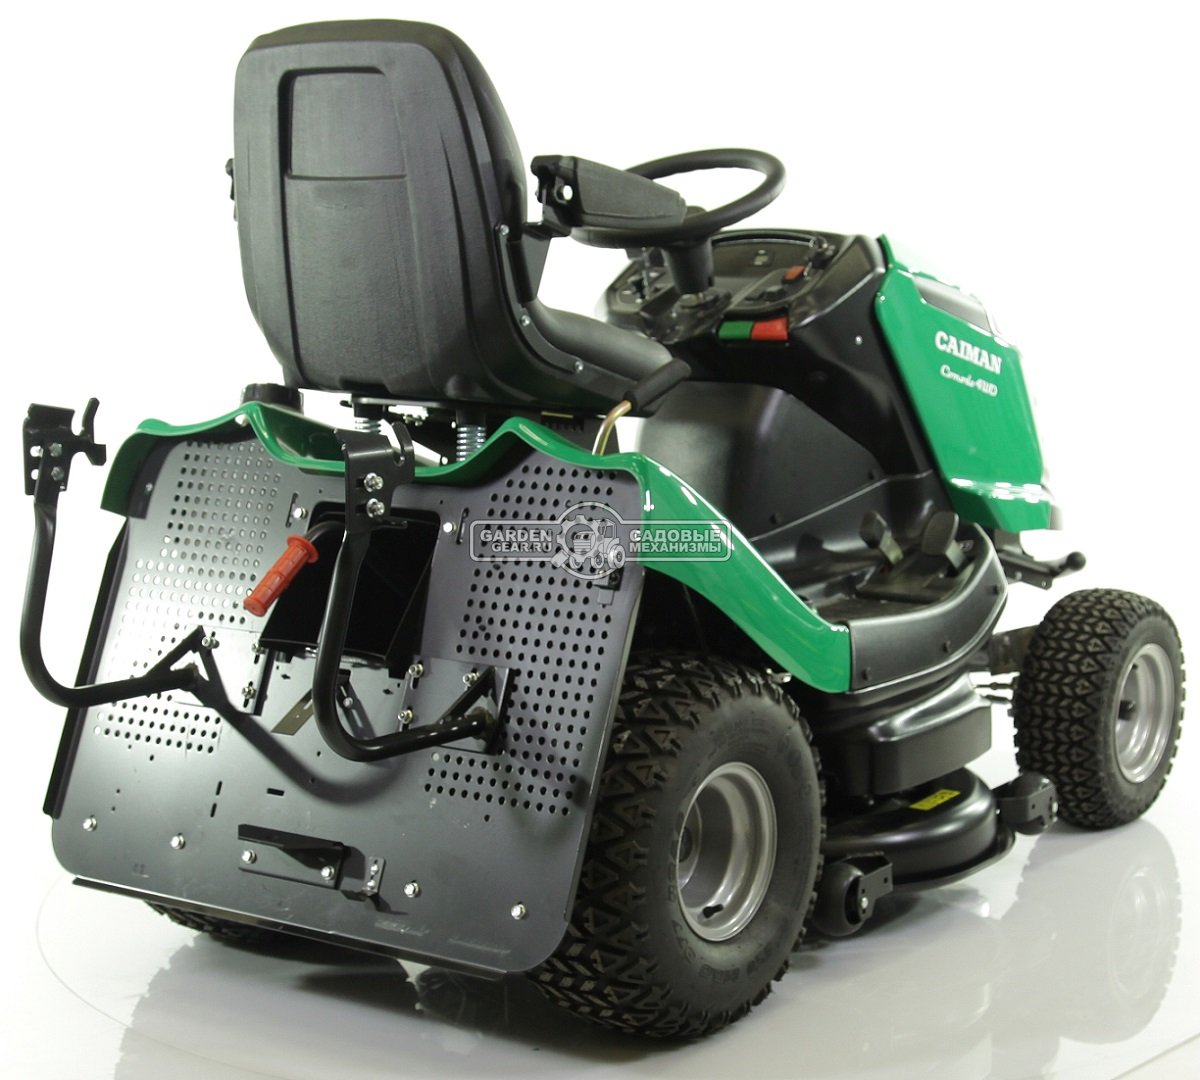 Садовый трактор Caiman Comodo 4WD (CZE, Kawasaki FS600V, 603 куб.см, гидростатика, дифференциал, травосборник 380 л., ширина кошения 102 см., 329 кг.)